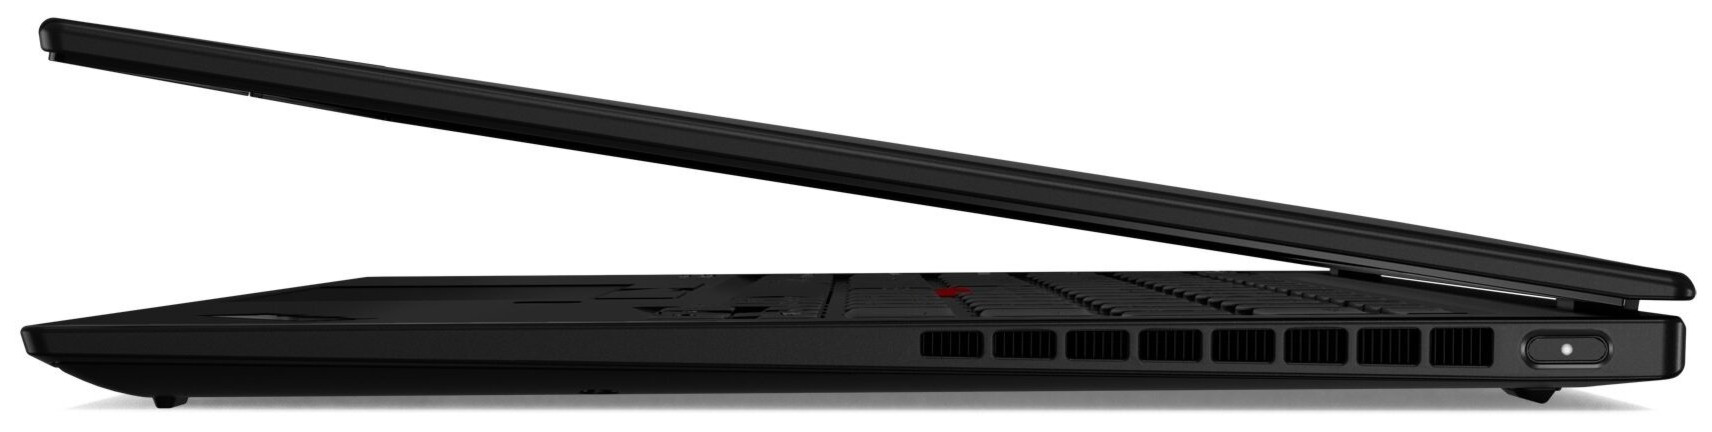 Ноутбук Lenovo ThinkPad X1 Nano (20UN005QRT) фото №5